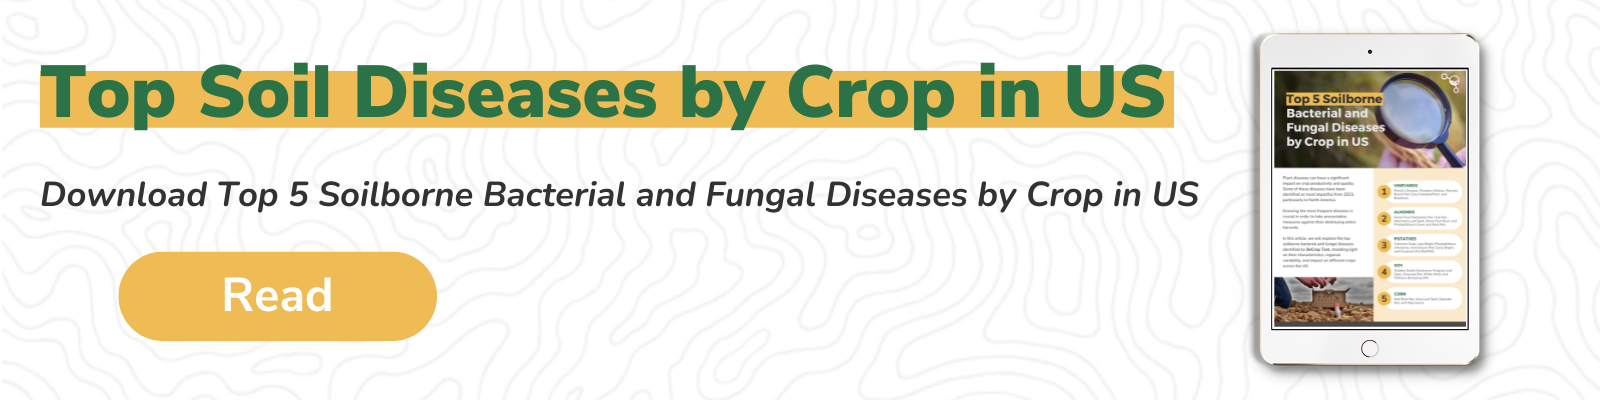 Top Soil Diseases by Crop in US Guide